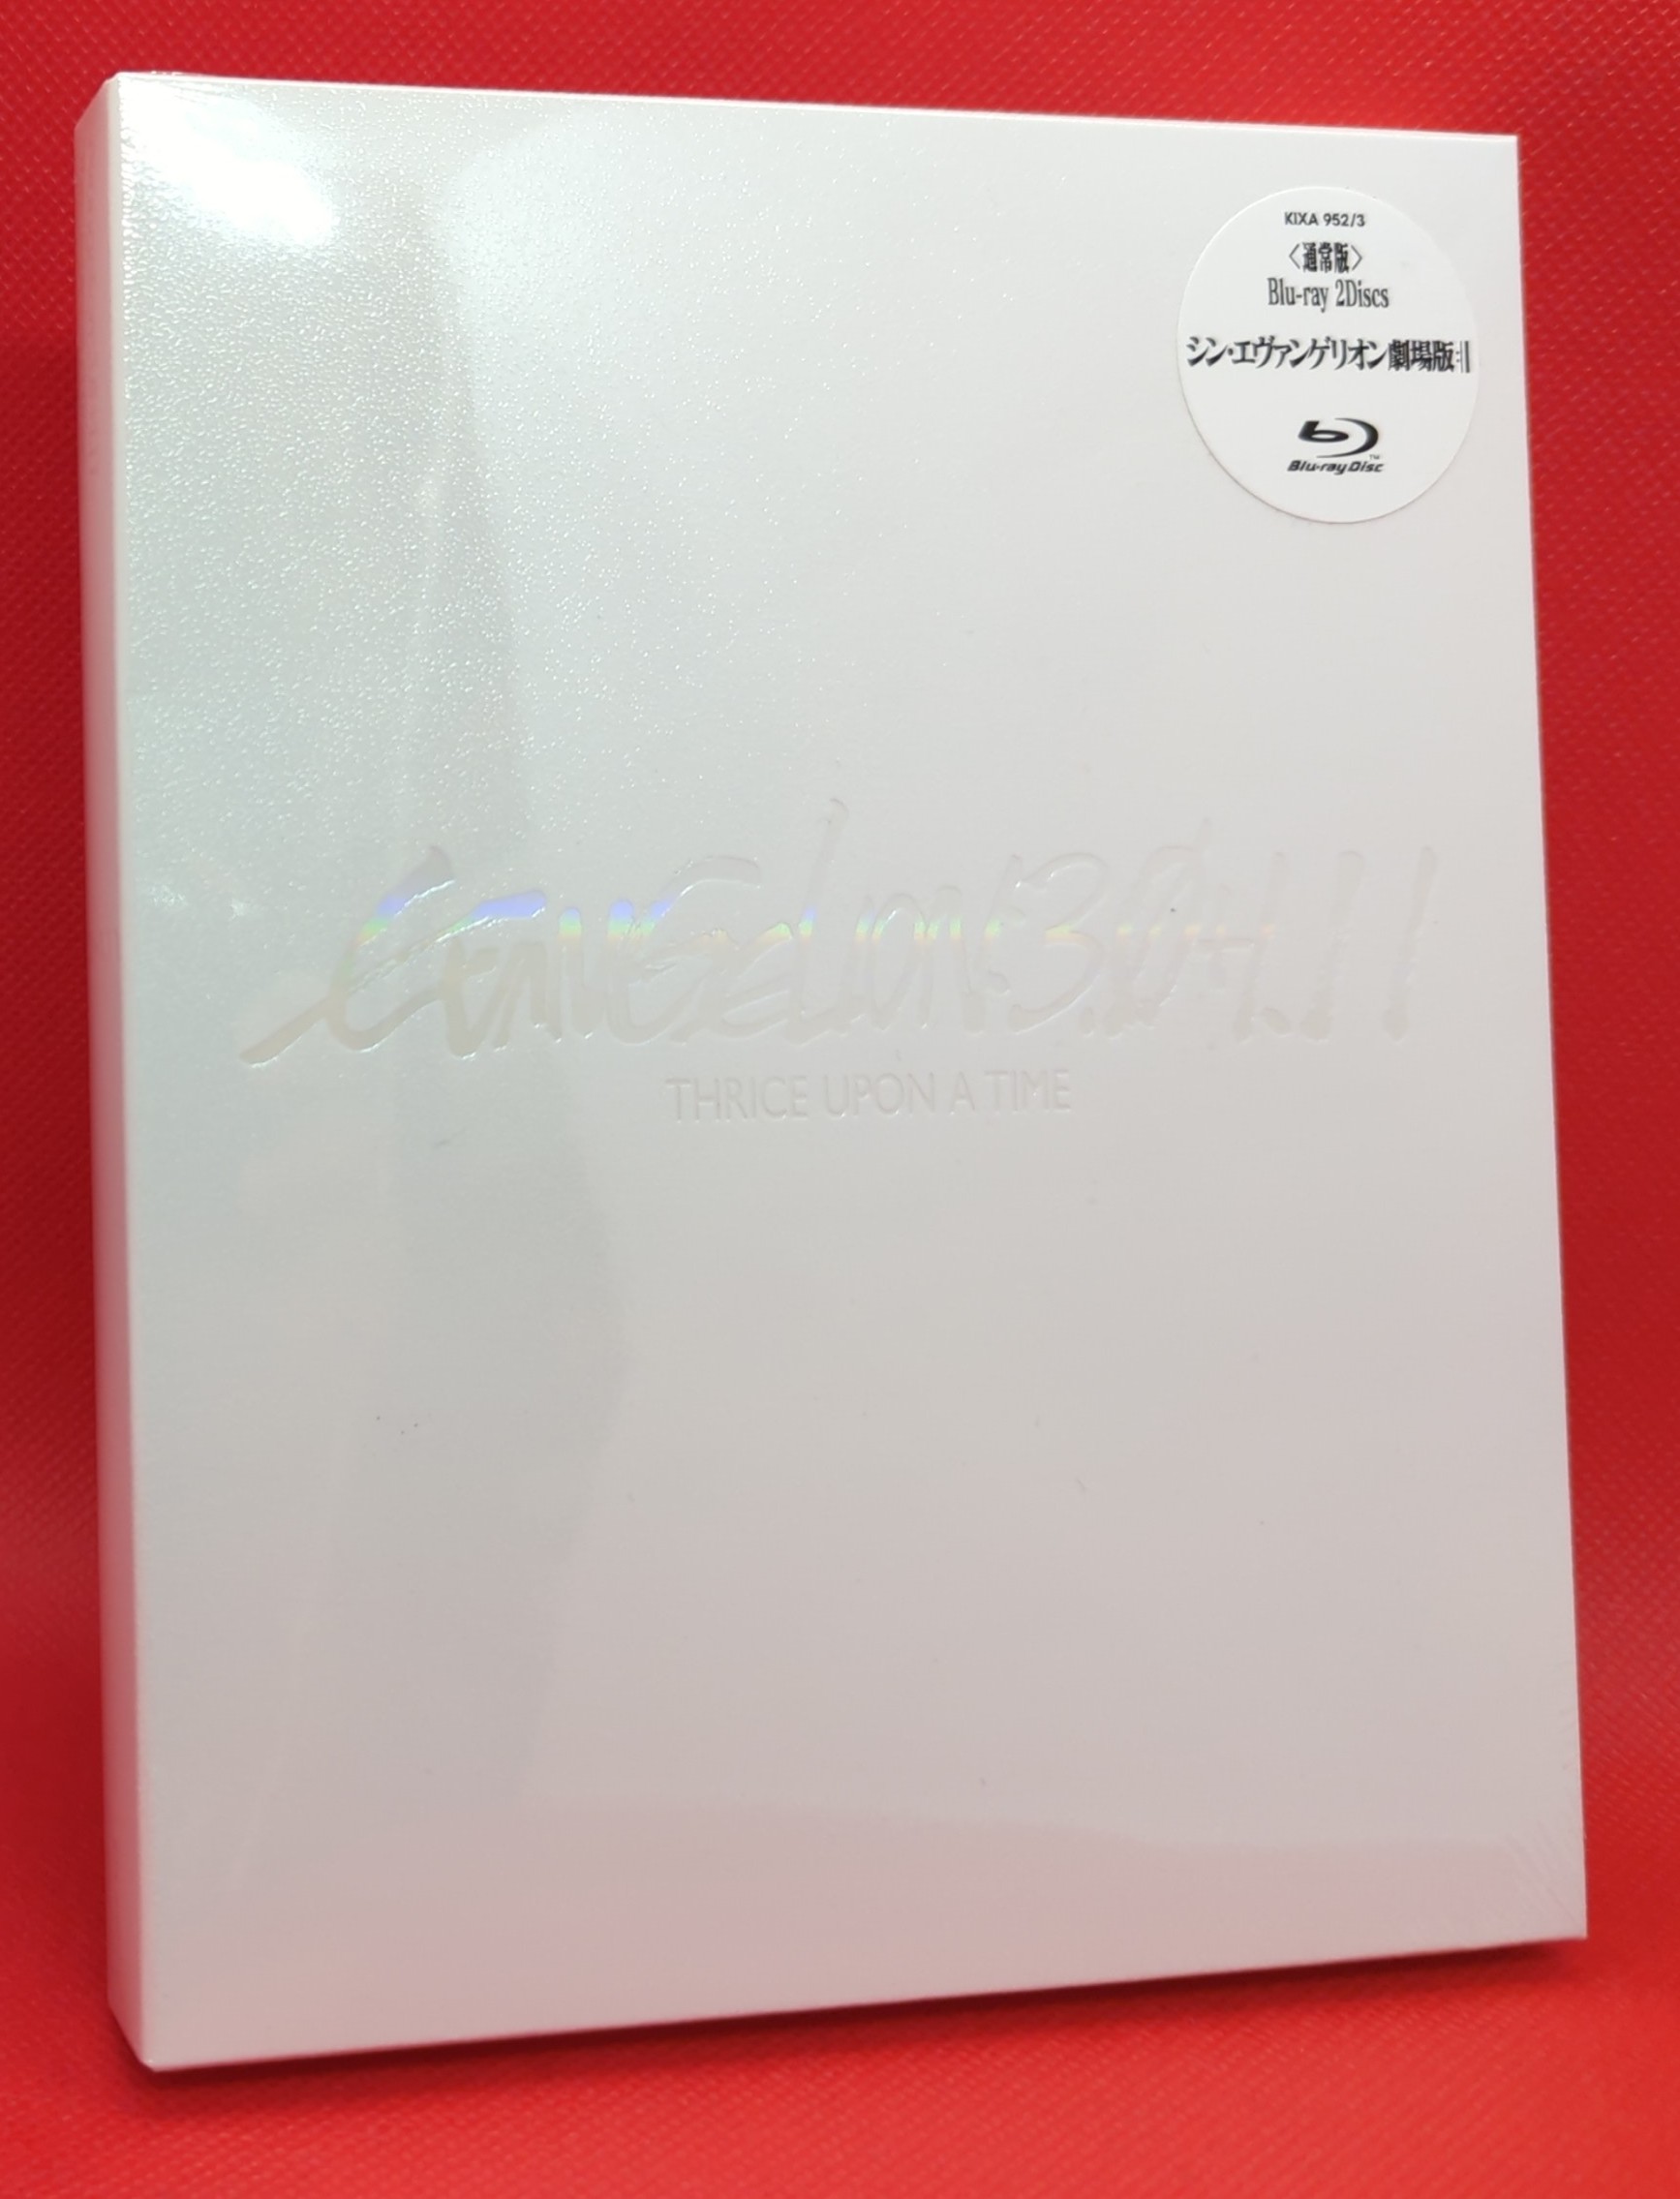 Shin Ikki Tousen Blu-ray (DigiPack) (Japan)